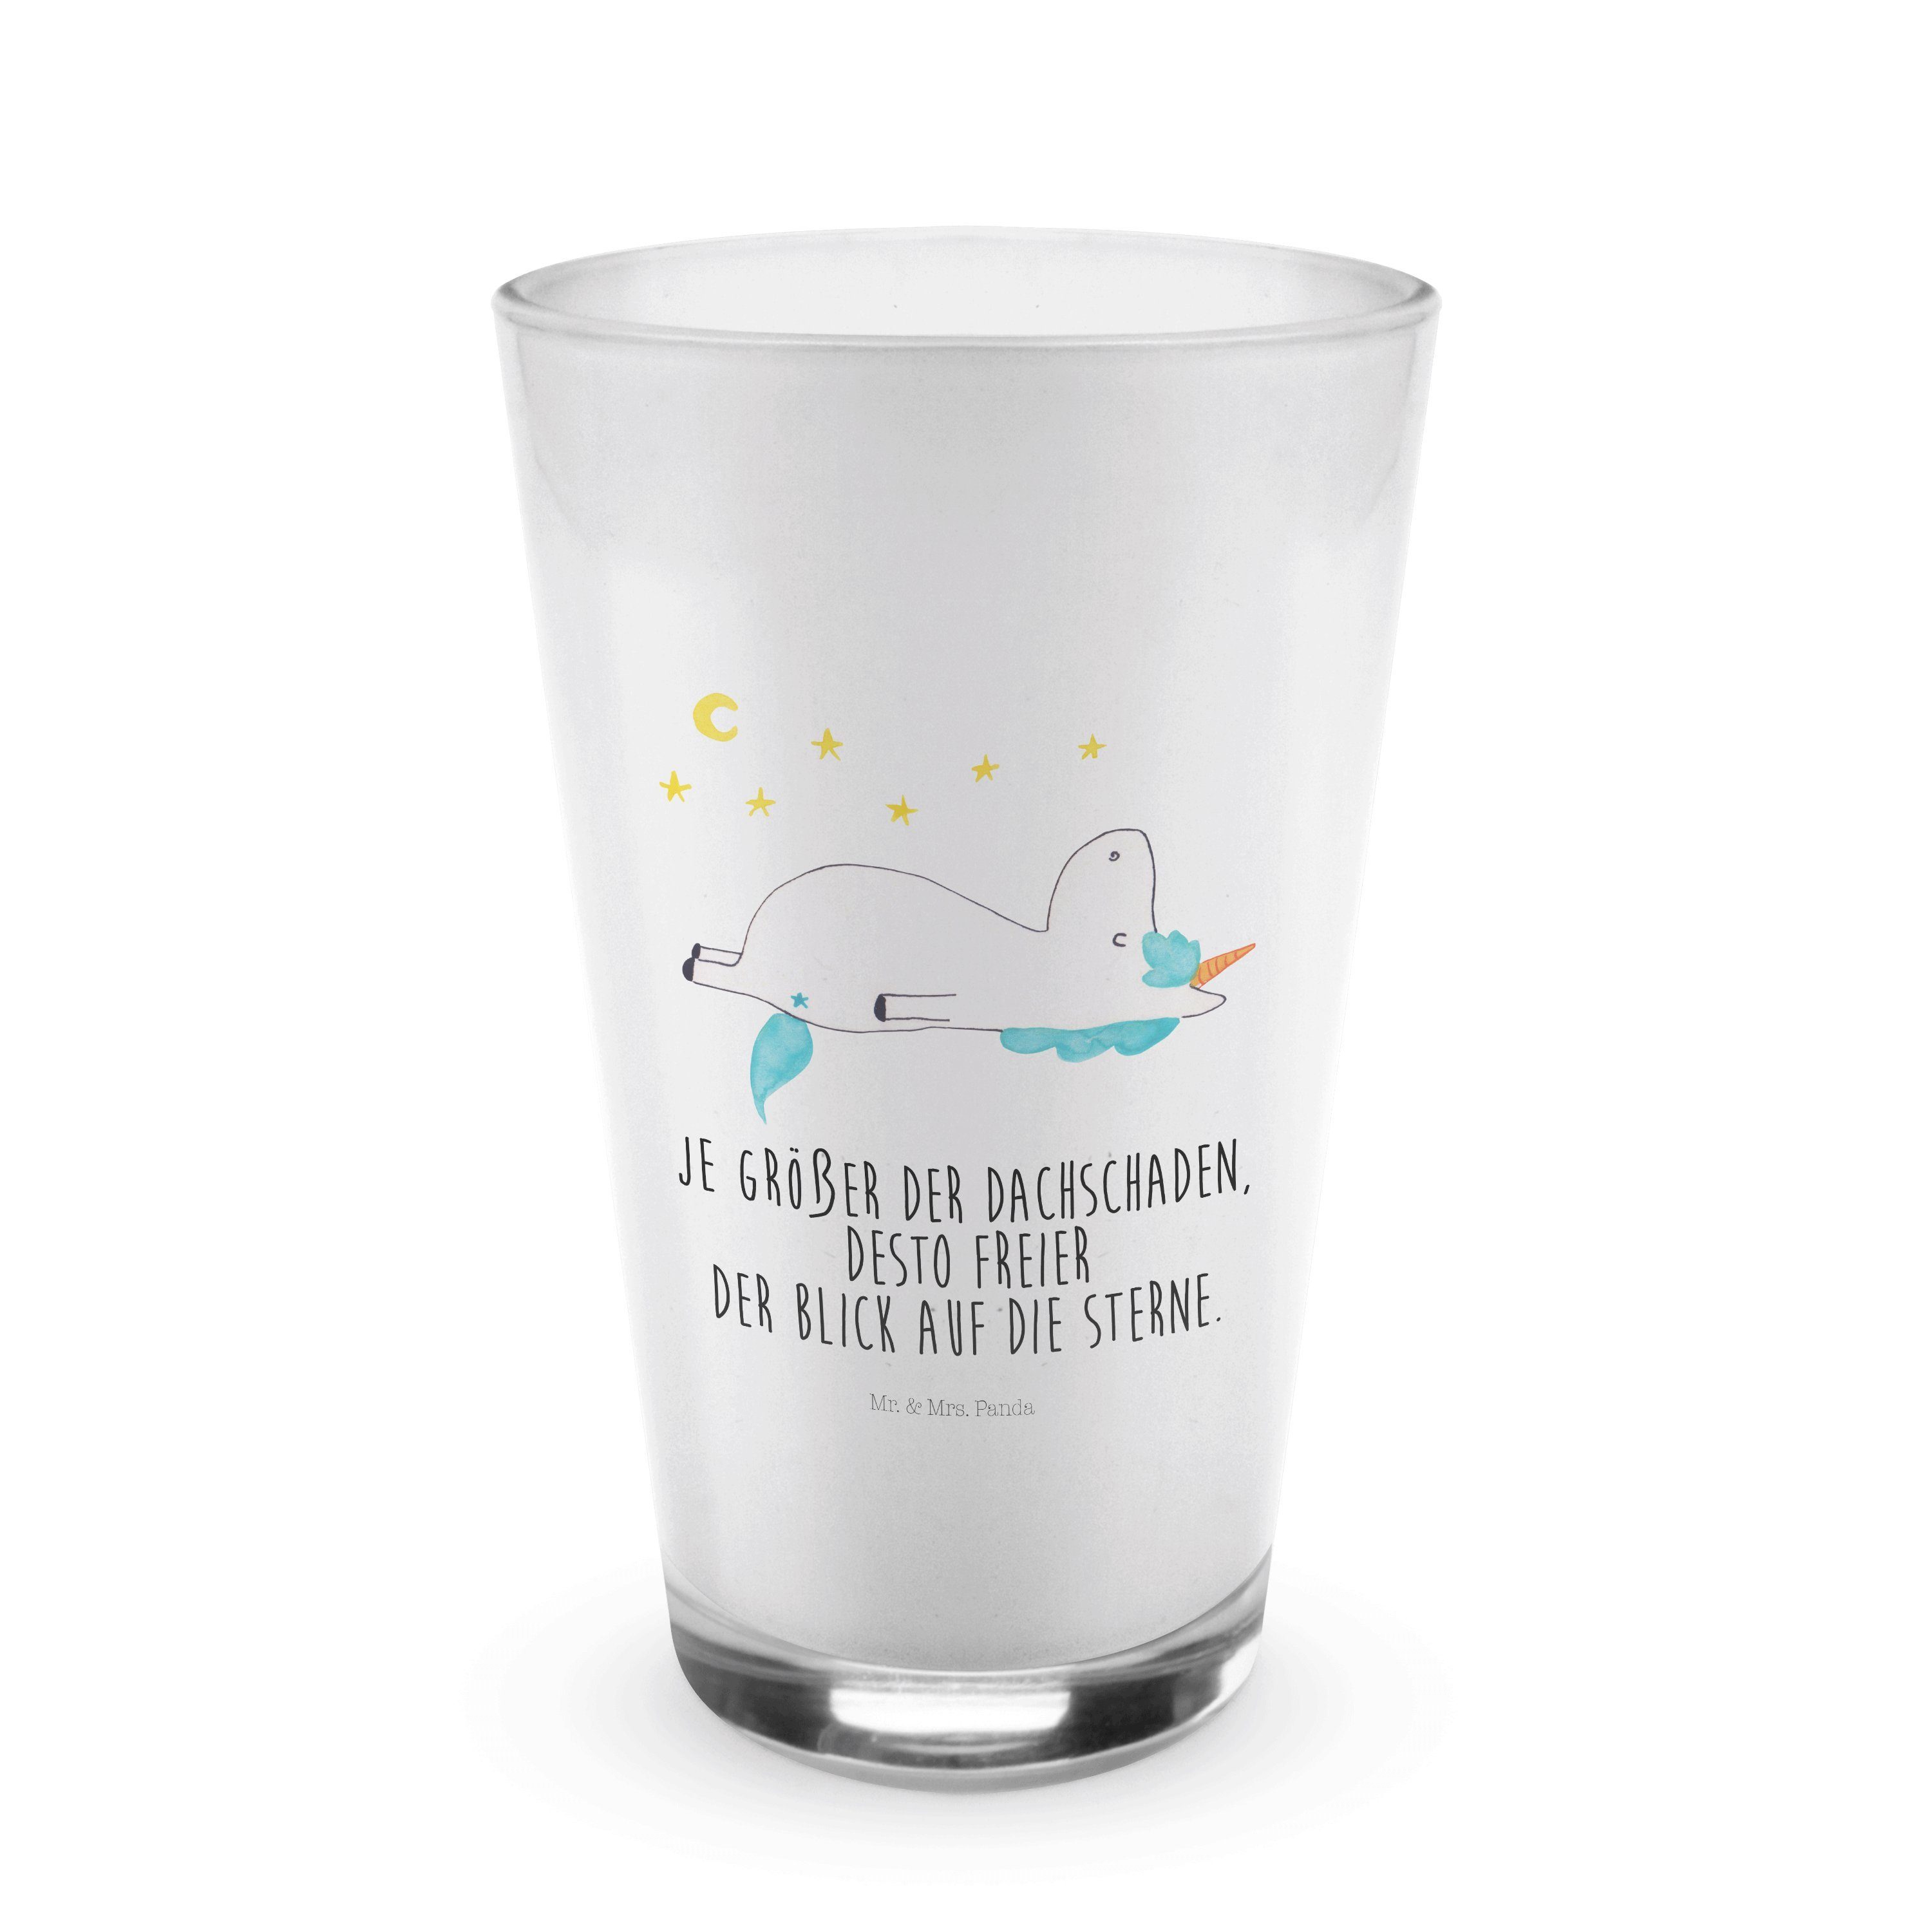 Mr. & Mrs. Panda Glas Einhorn Sternenhimmel - Transparent - Geschenk, Glas, Dachschaden, Ca, Premium Glas